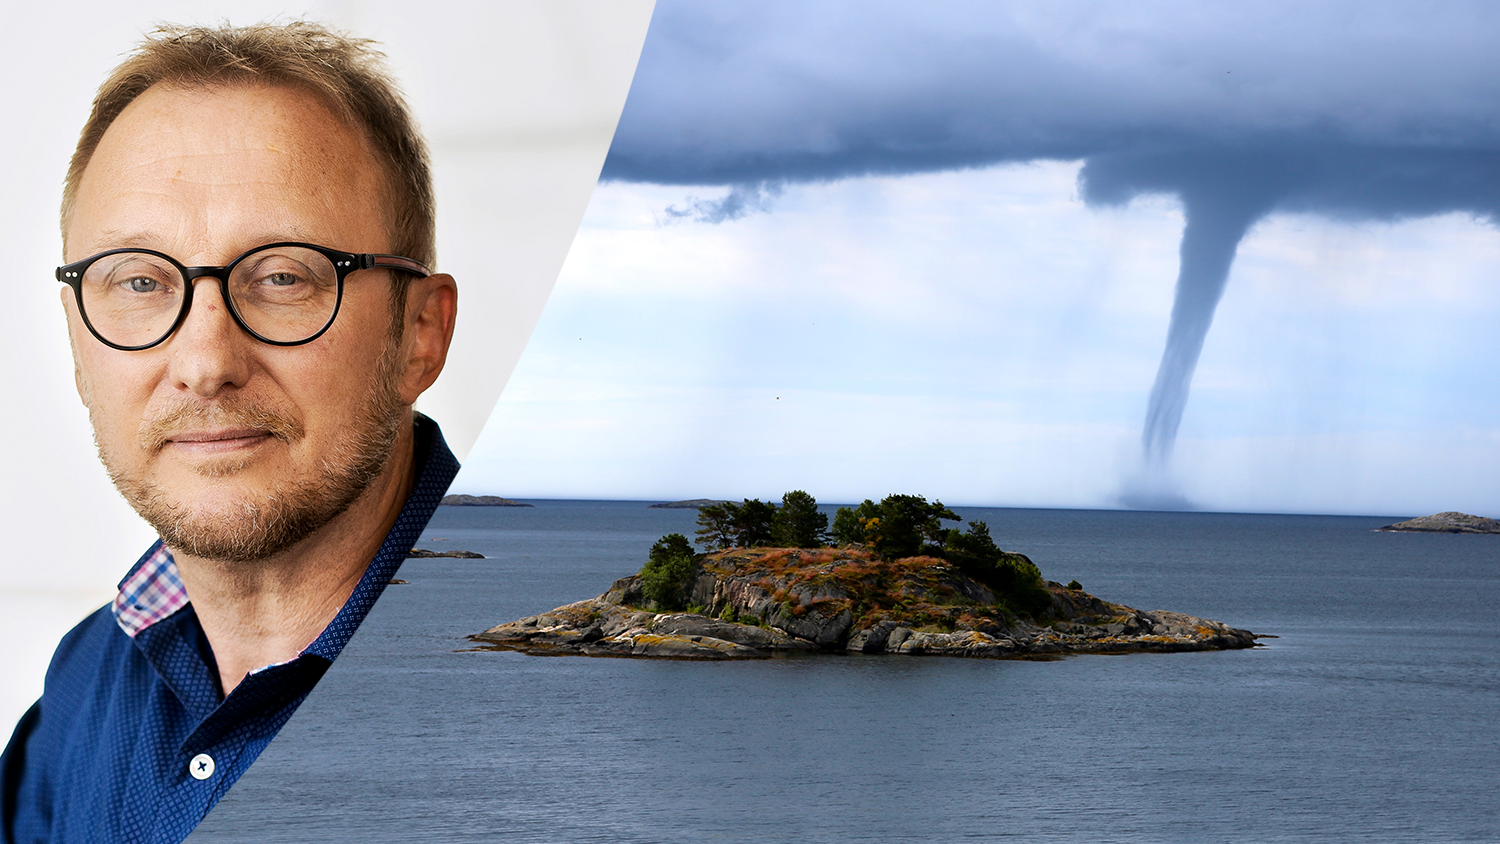 Montage med Bengt Johansson och entornado över vatten, nära en liten ö.